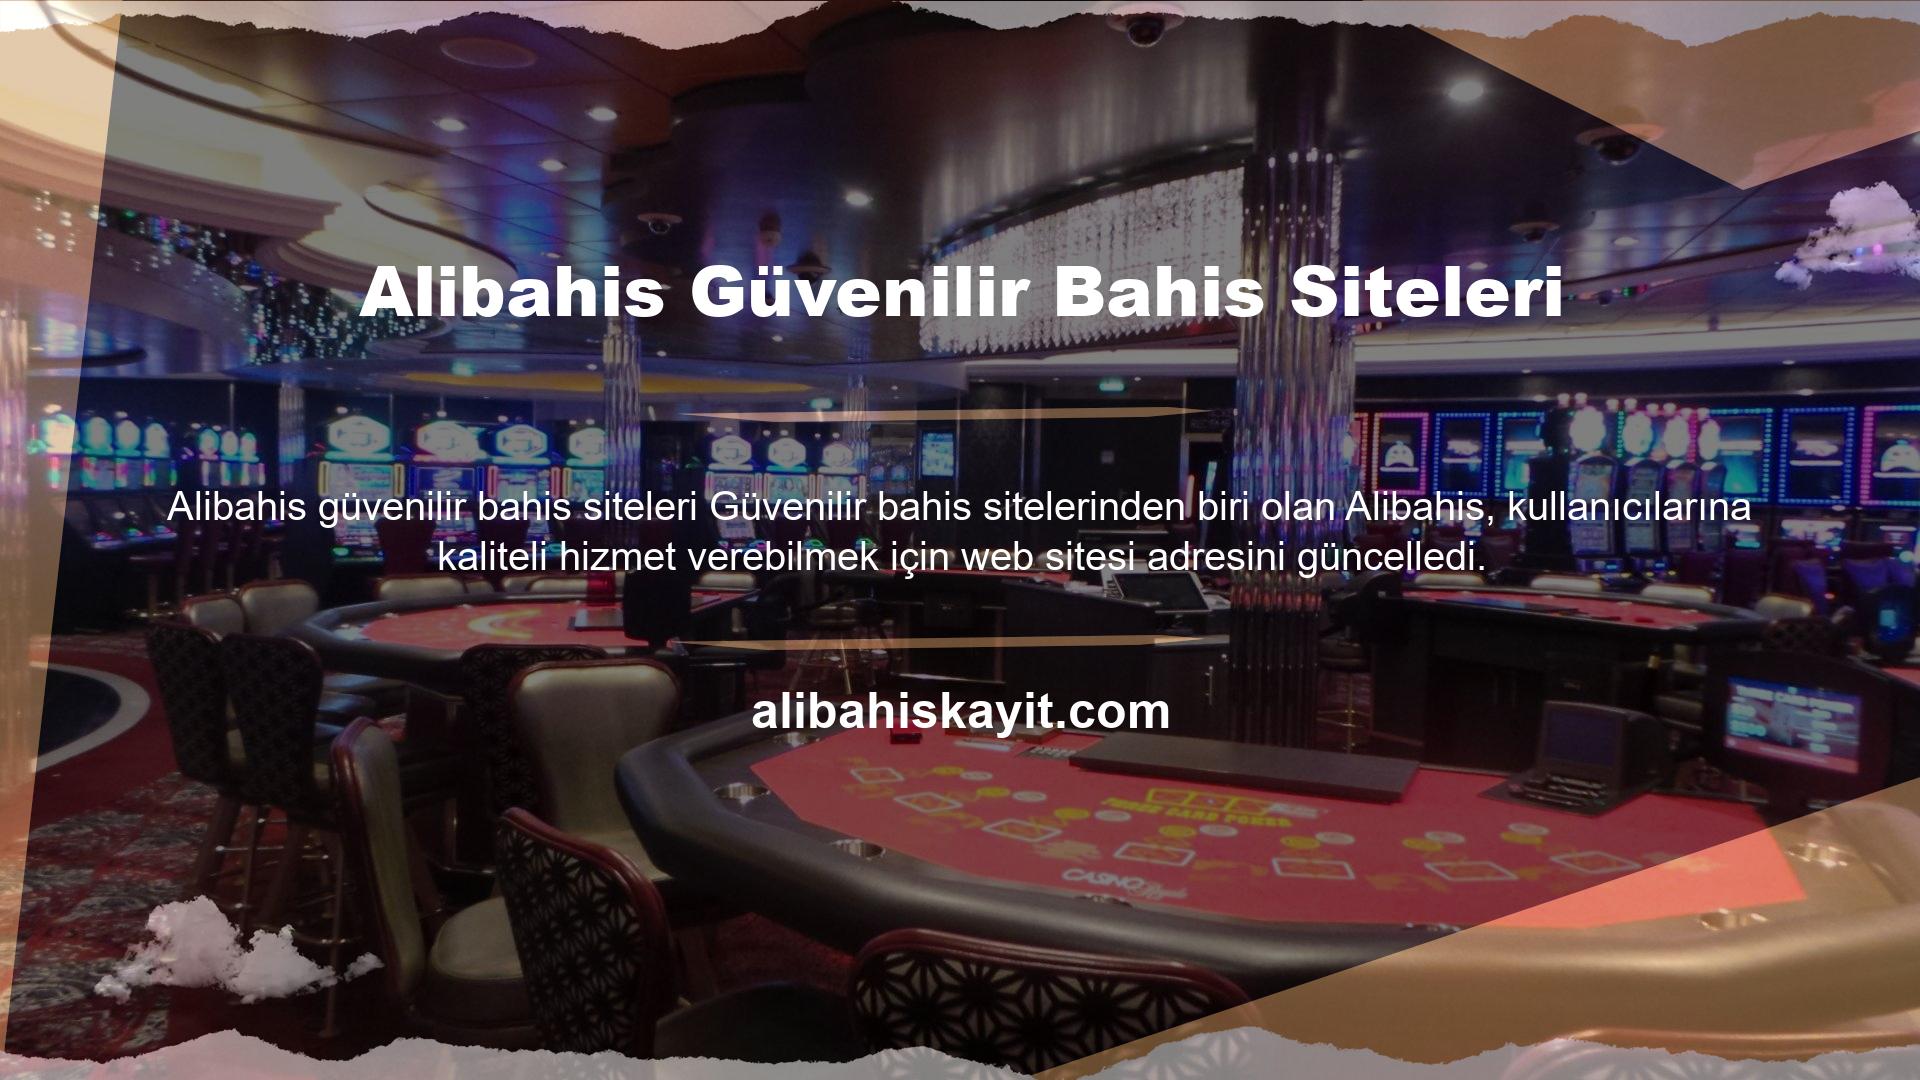 Bu site de diğer casino siteleri gibi BTK tarafından engellendiği için yasaklanmıştır